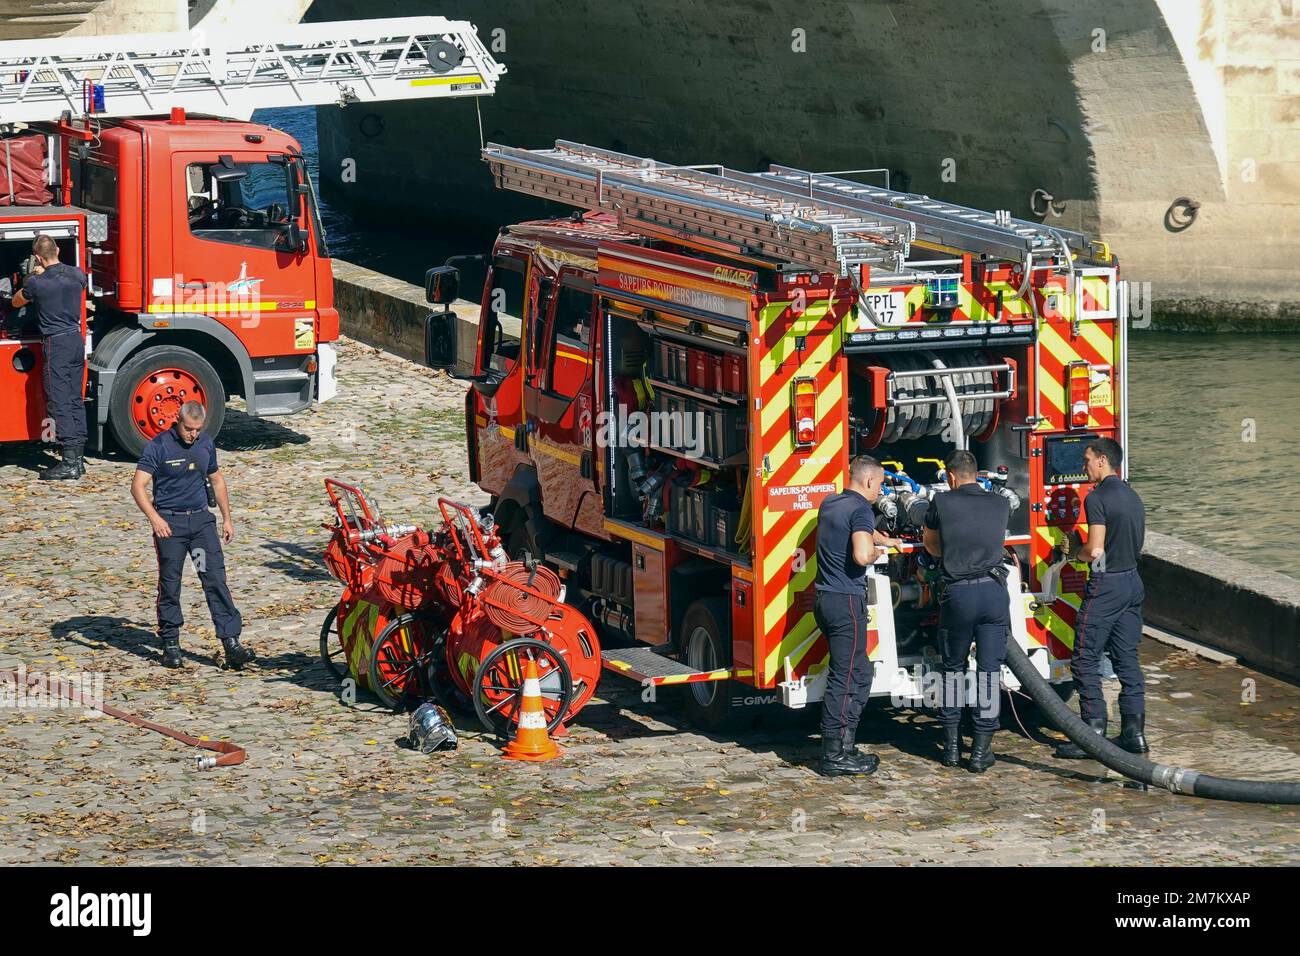 Frankreich, Paris, ein Feuerwehrteam-Training am Ufer der seine Foto © Fabio Mazzarella/Sintesi/Alamy Stock Photo Stockfoto